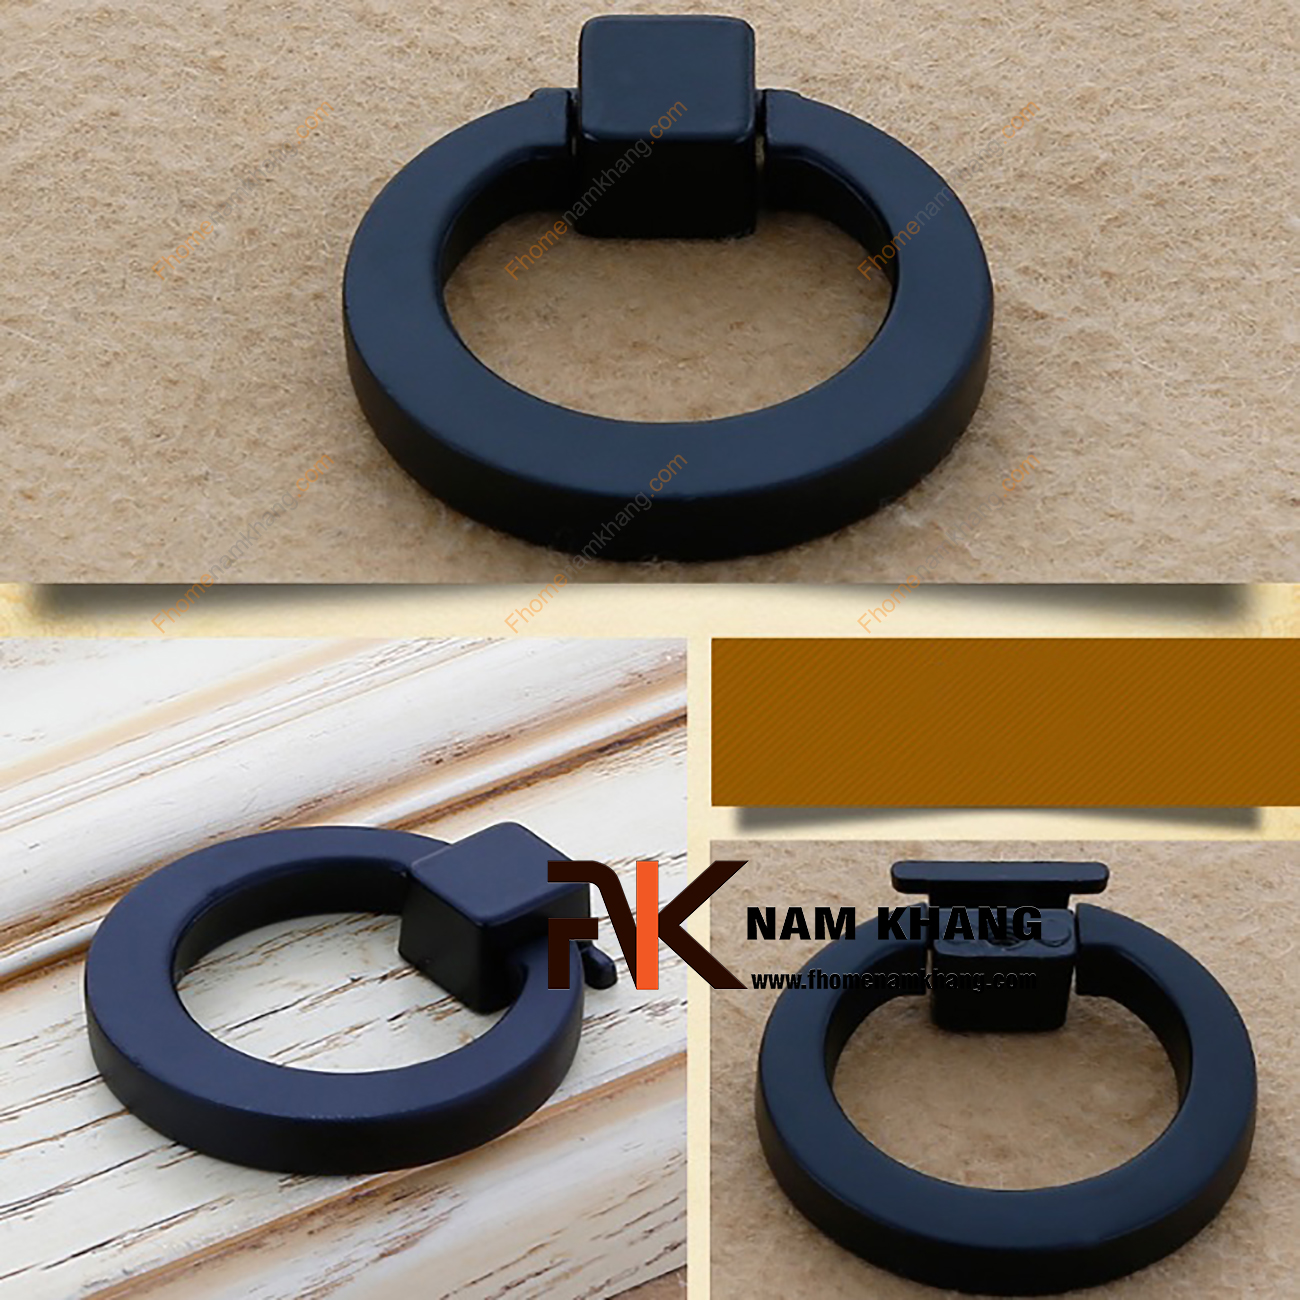 Núm cửa tủ dạng vòng màu đen mờ NK161-D có thiết kế khá đơn giản khi sử dụng kết hợp phần chân đế hình vuông với vòng cao cấp.